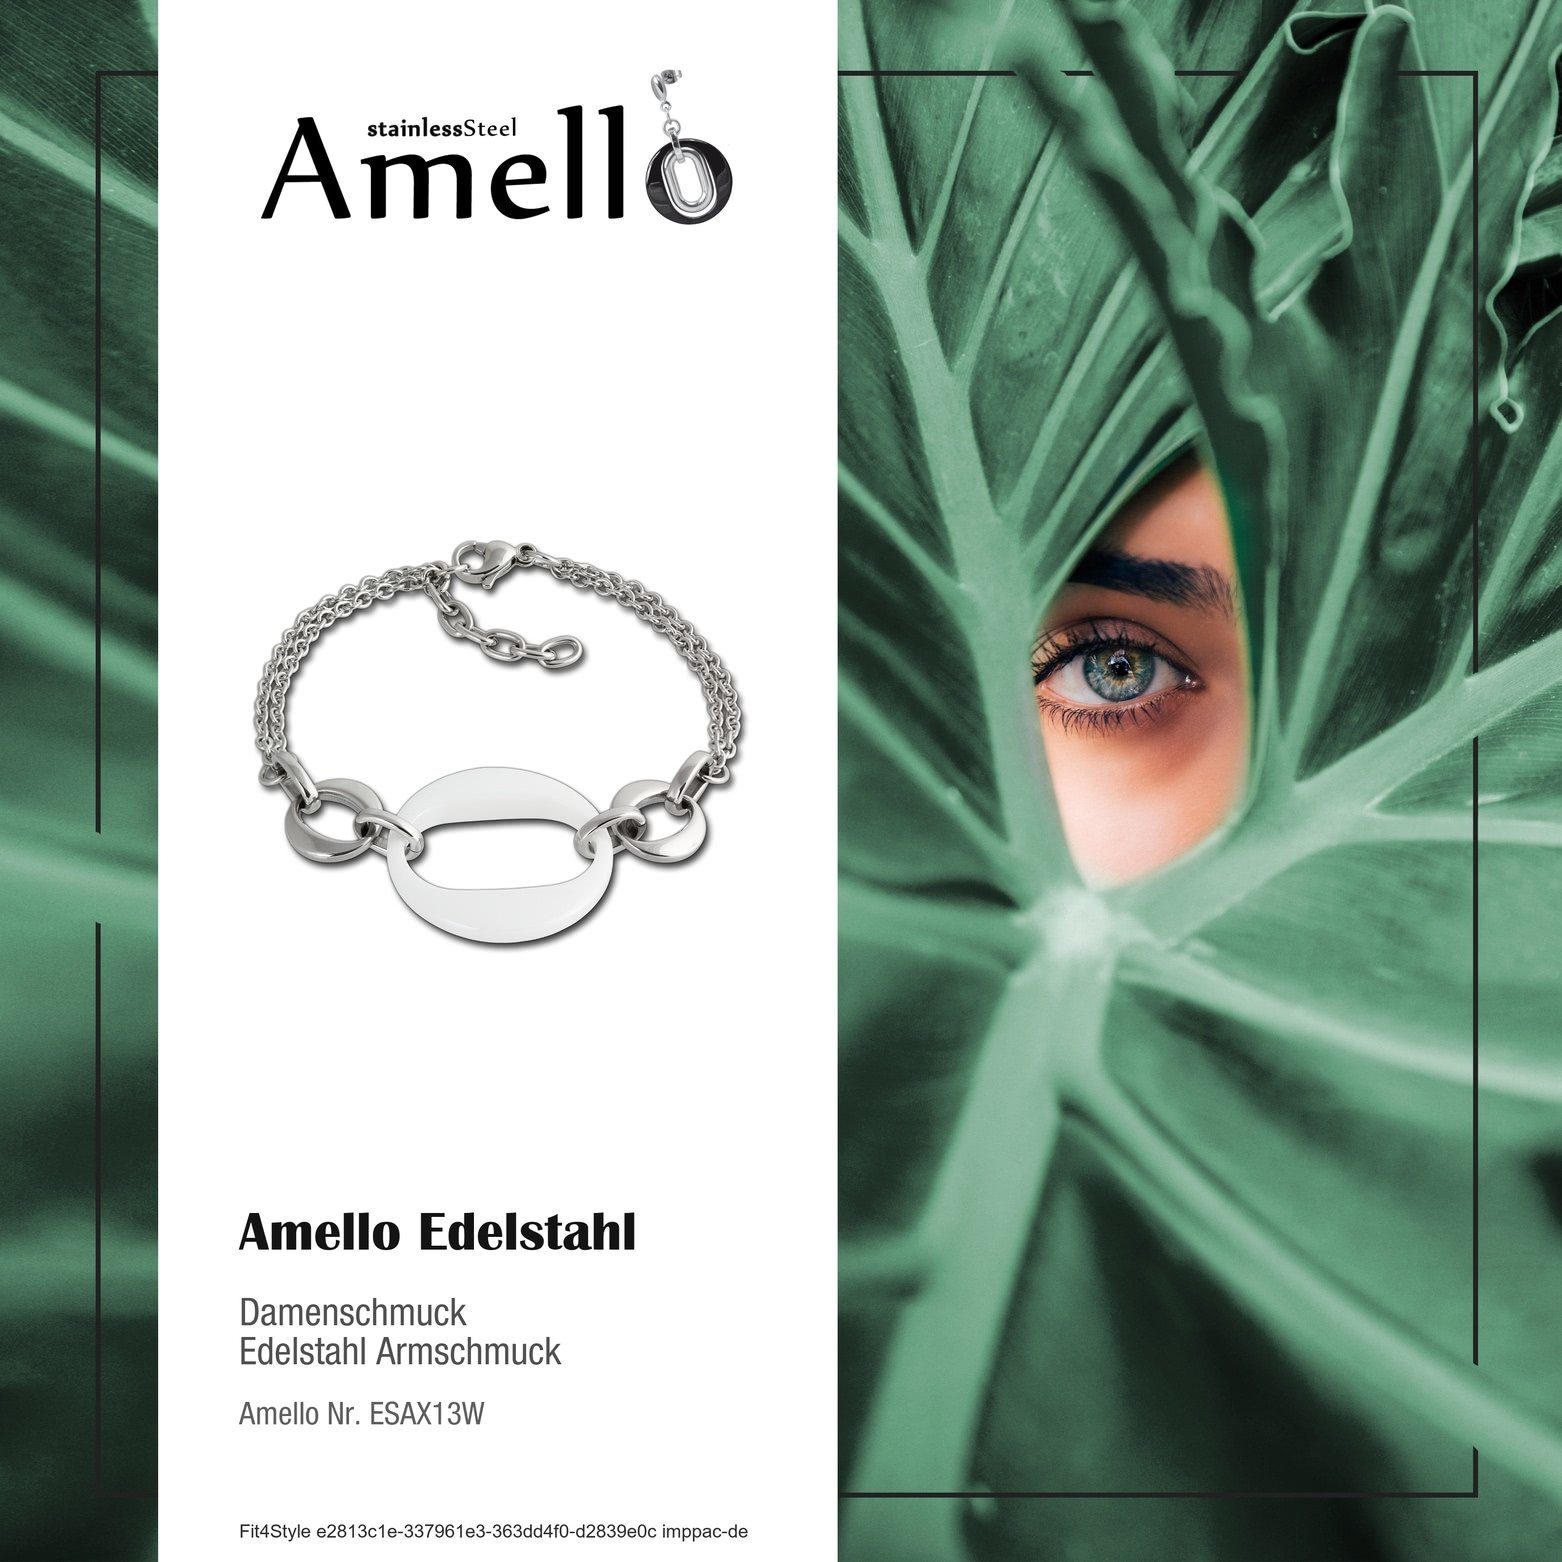 Edelstahl weiß für silber Armband Round Edelstahlarmband Steel) Armbänder Amello Amello (Armband), Damen (Stainless